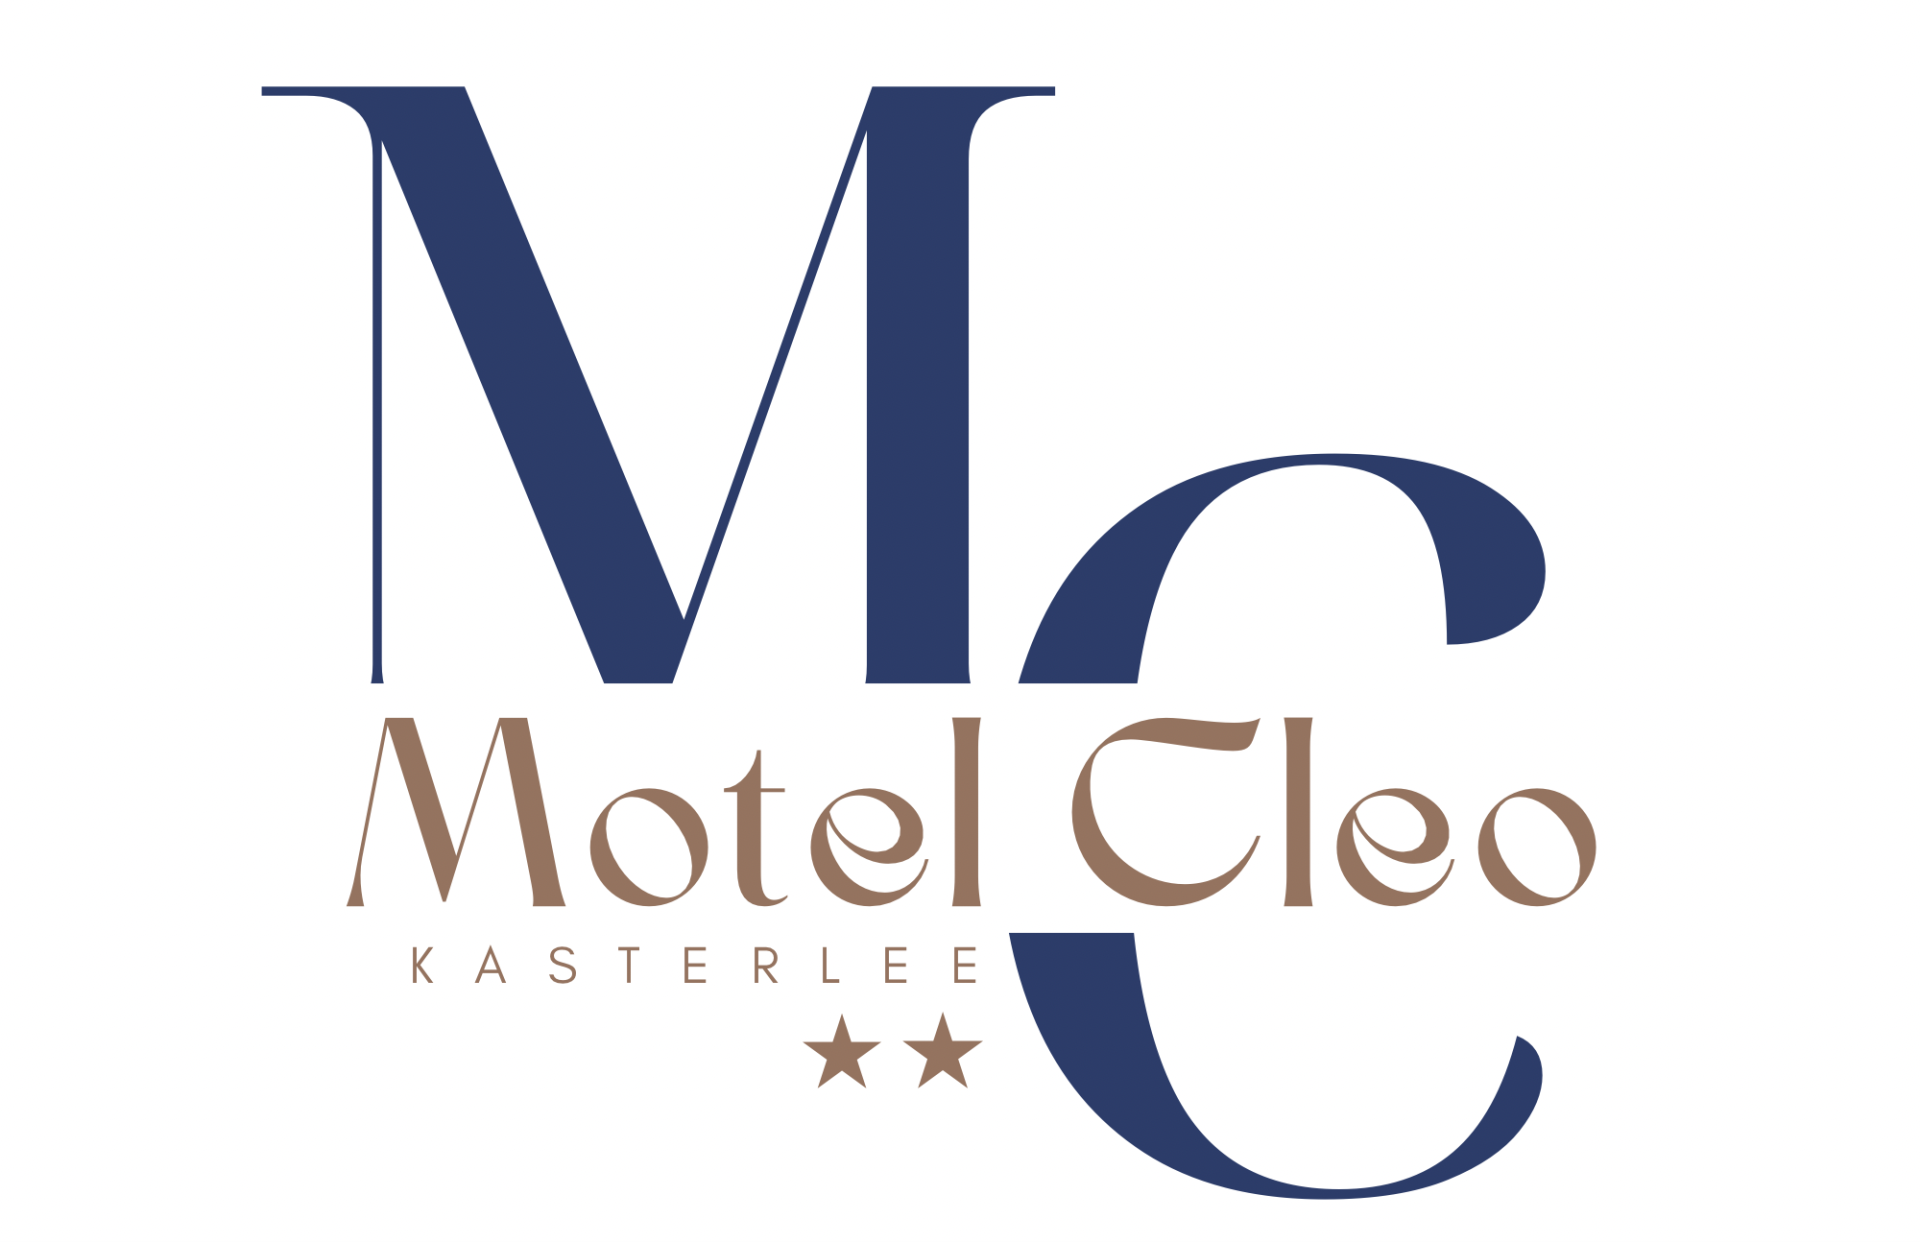  Motel Cleo